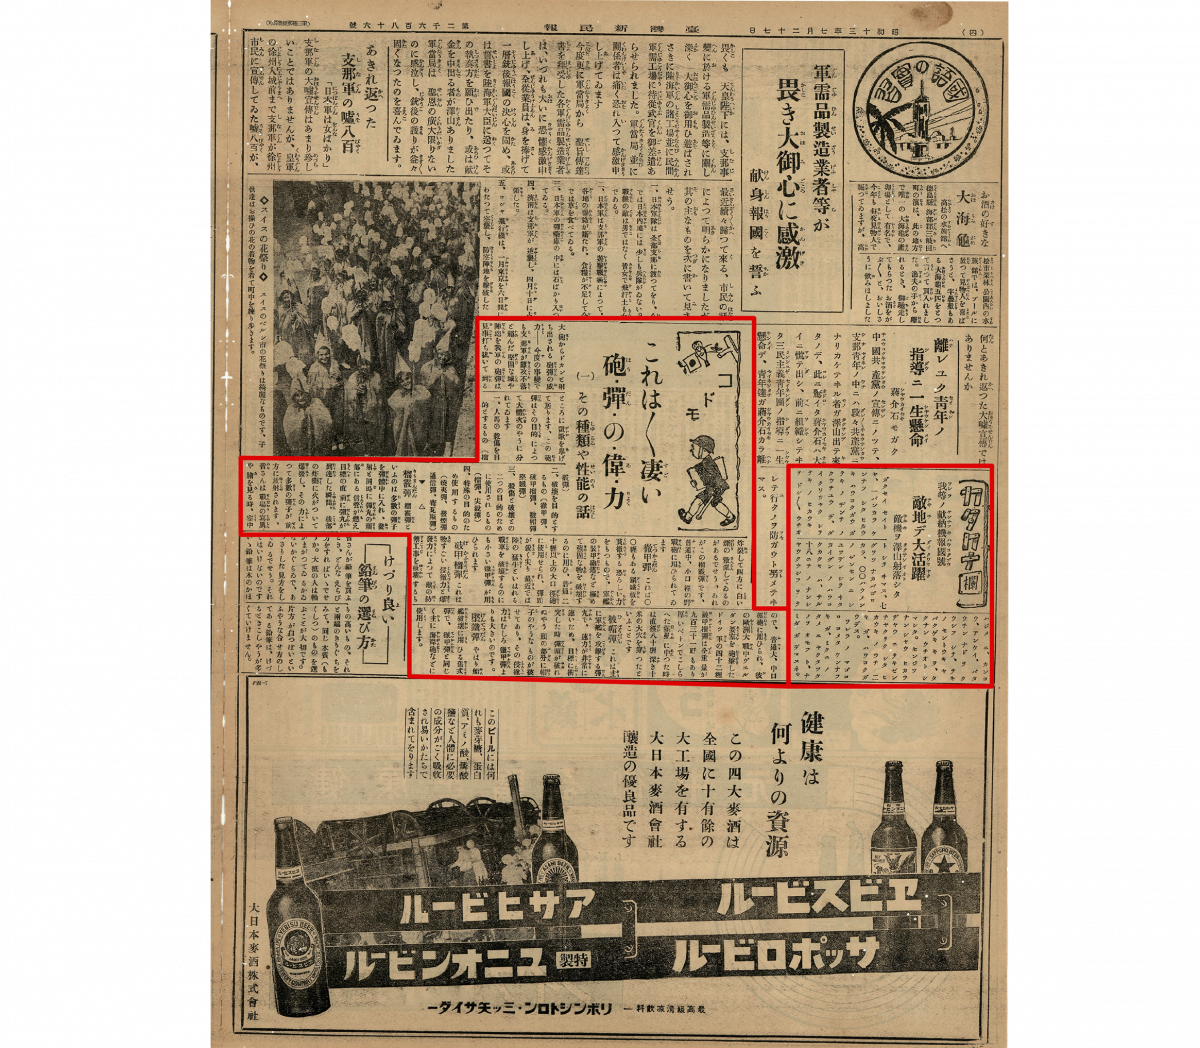 1938 年 7 月《臺灣新民報》國語實習新聞。コドモ（兒童）專欄介紹戰爭使用的榴彈、燒夷彈等各式砲彈。右下方以片假名拼寫的新聞，宣傳射落敵機的戰績。 圖｜中研院臺灣史研究所檔案館